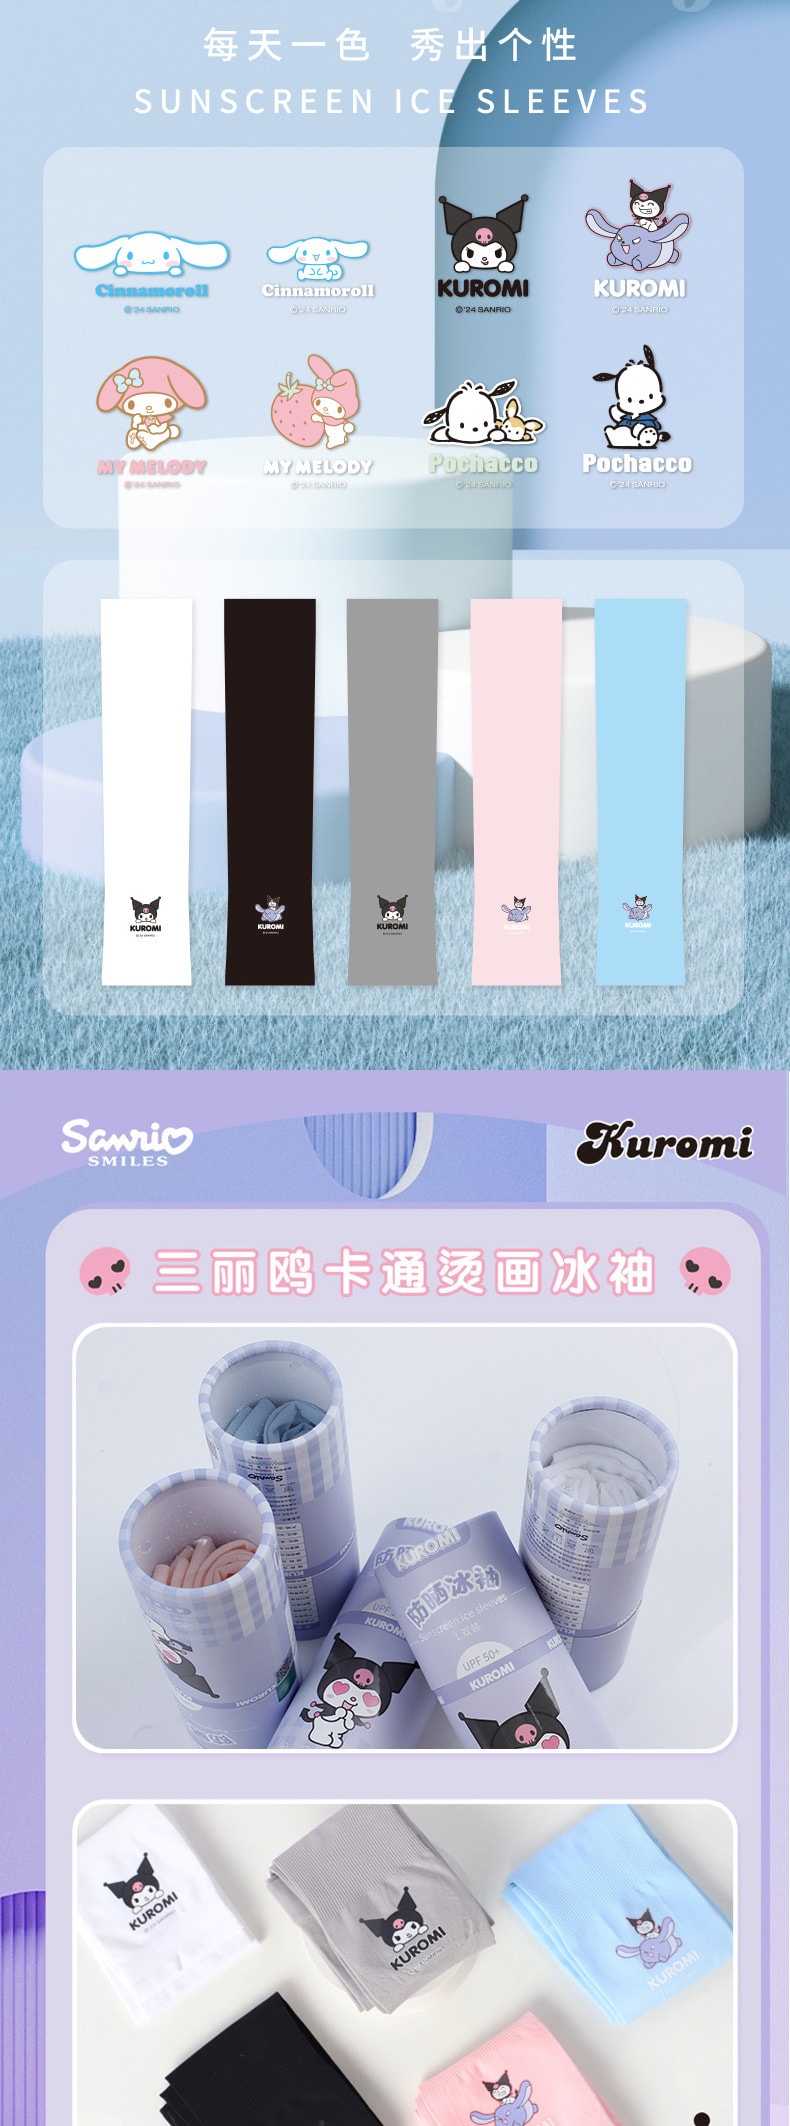 【中國】FOXTAIL 三麗鷗夏季新款防紫外線冰絲冰袖套 成人戶外運動護臂袖套-藍色 大耳狗 1份